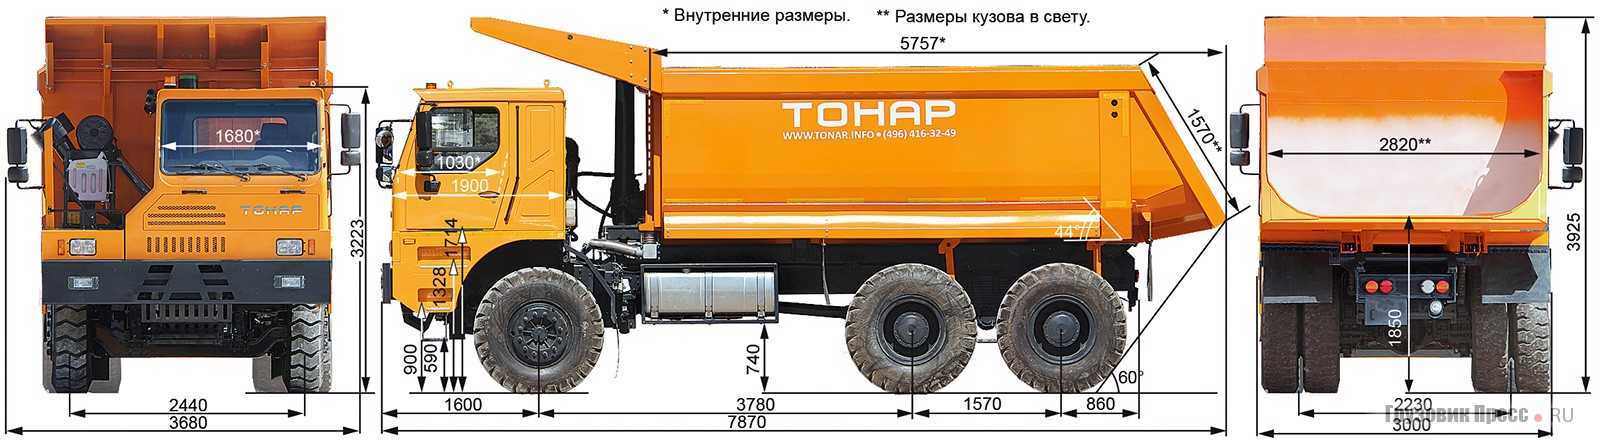 Характеристики тонар – грузовик тонар 6428 — полная характеристика автомобиля. технические параметры, габаритные размеры. отзывы владельцев